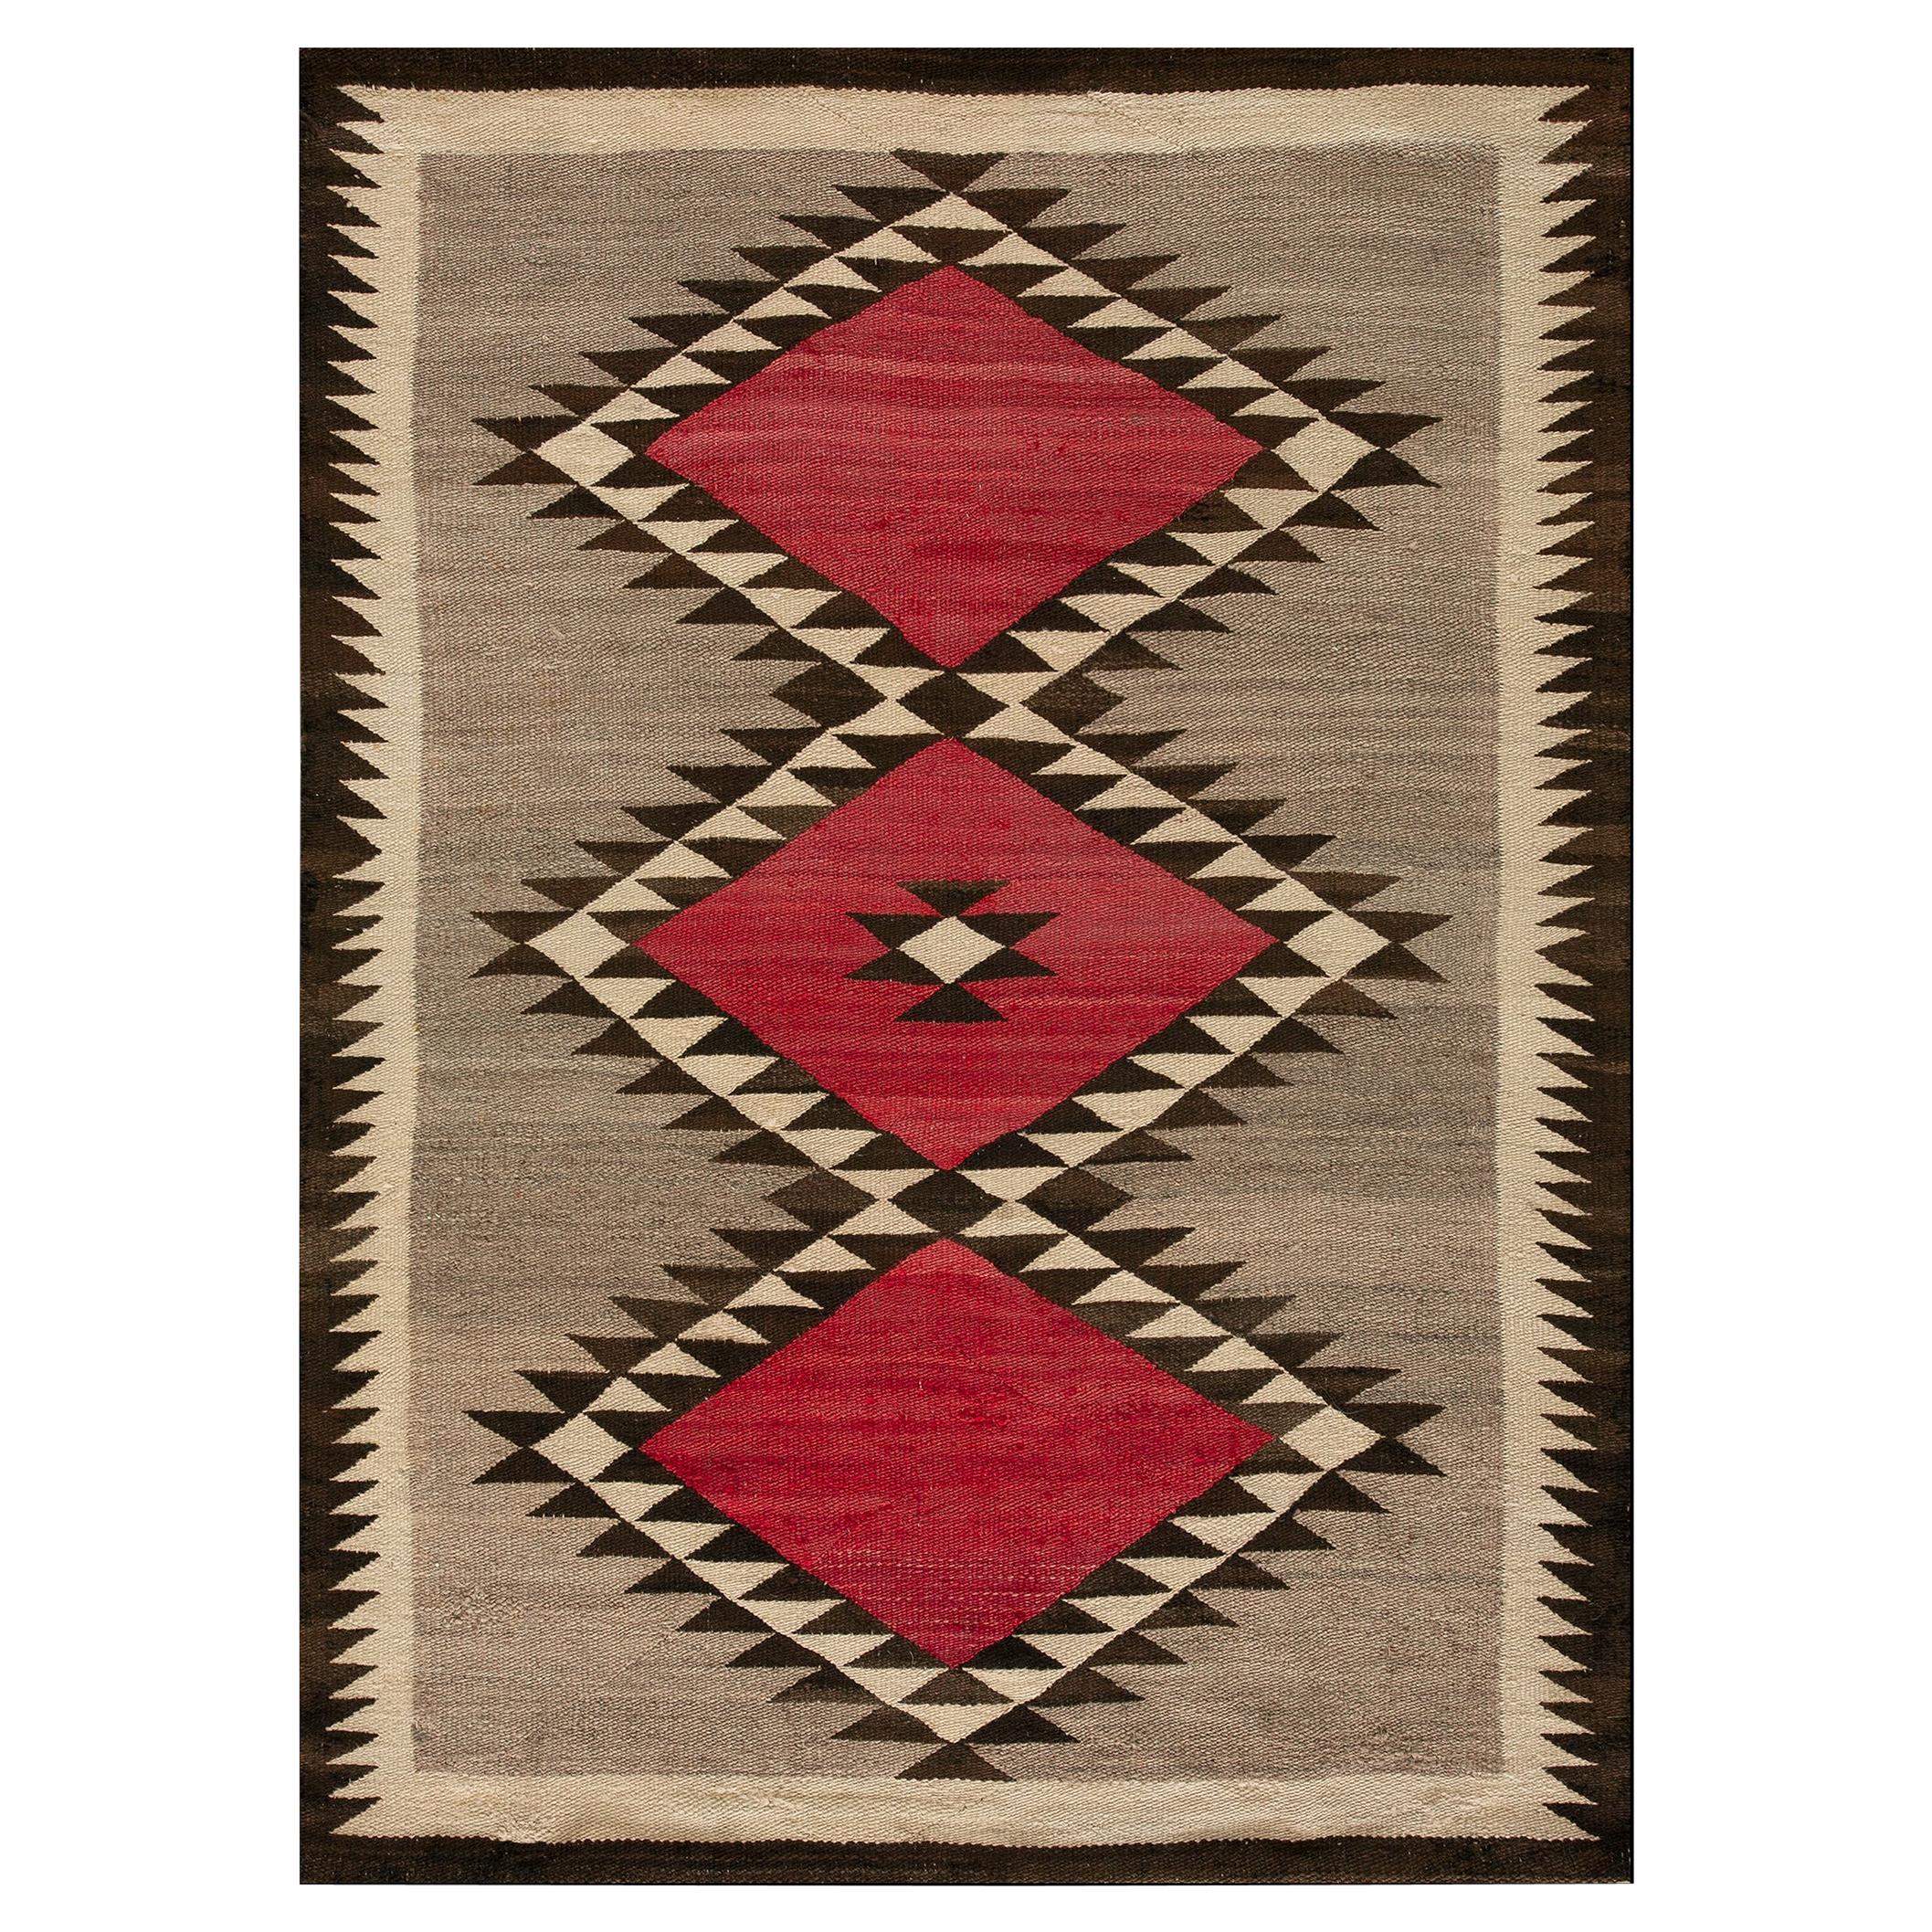 Antique American Navajo Rug